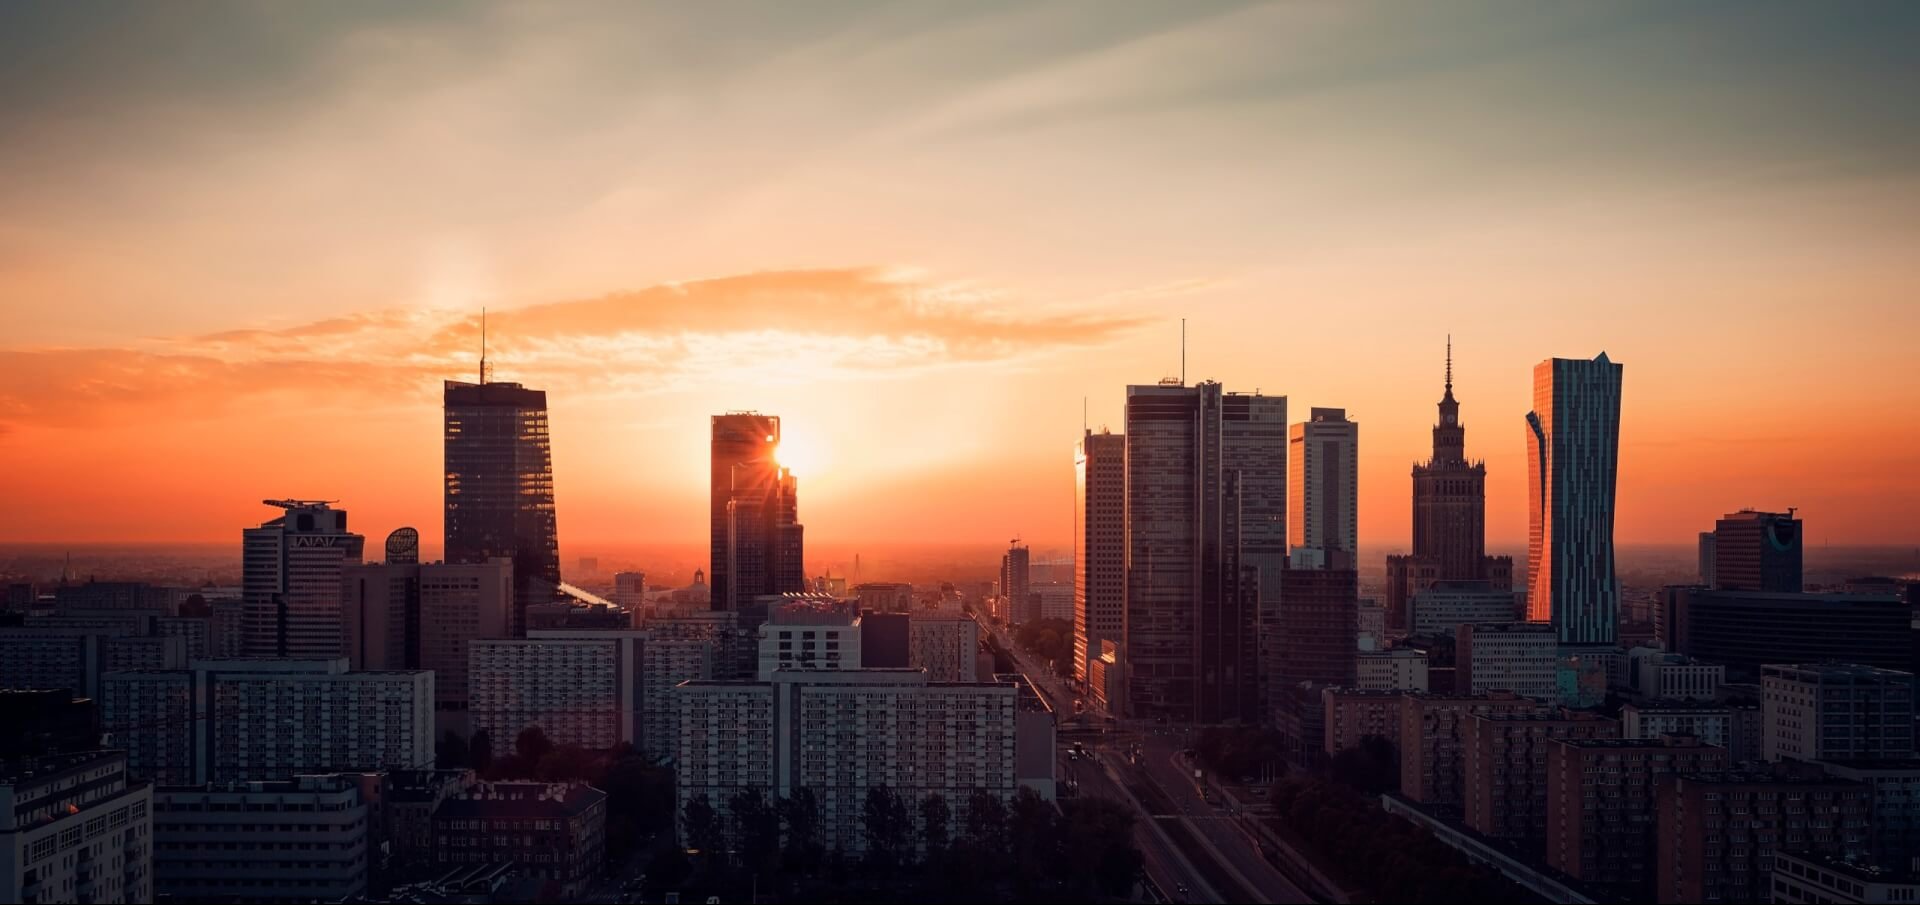 Potencjał inwestycyjny Warszawy rośnie. Jak będzie wyglądać przyszłość stolicy?  